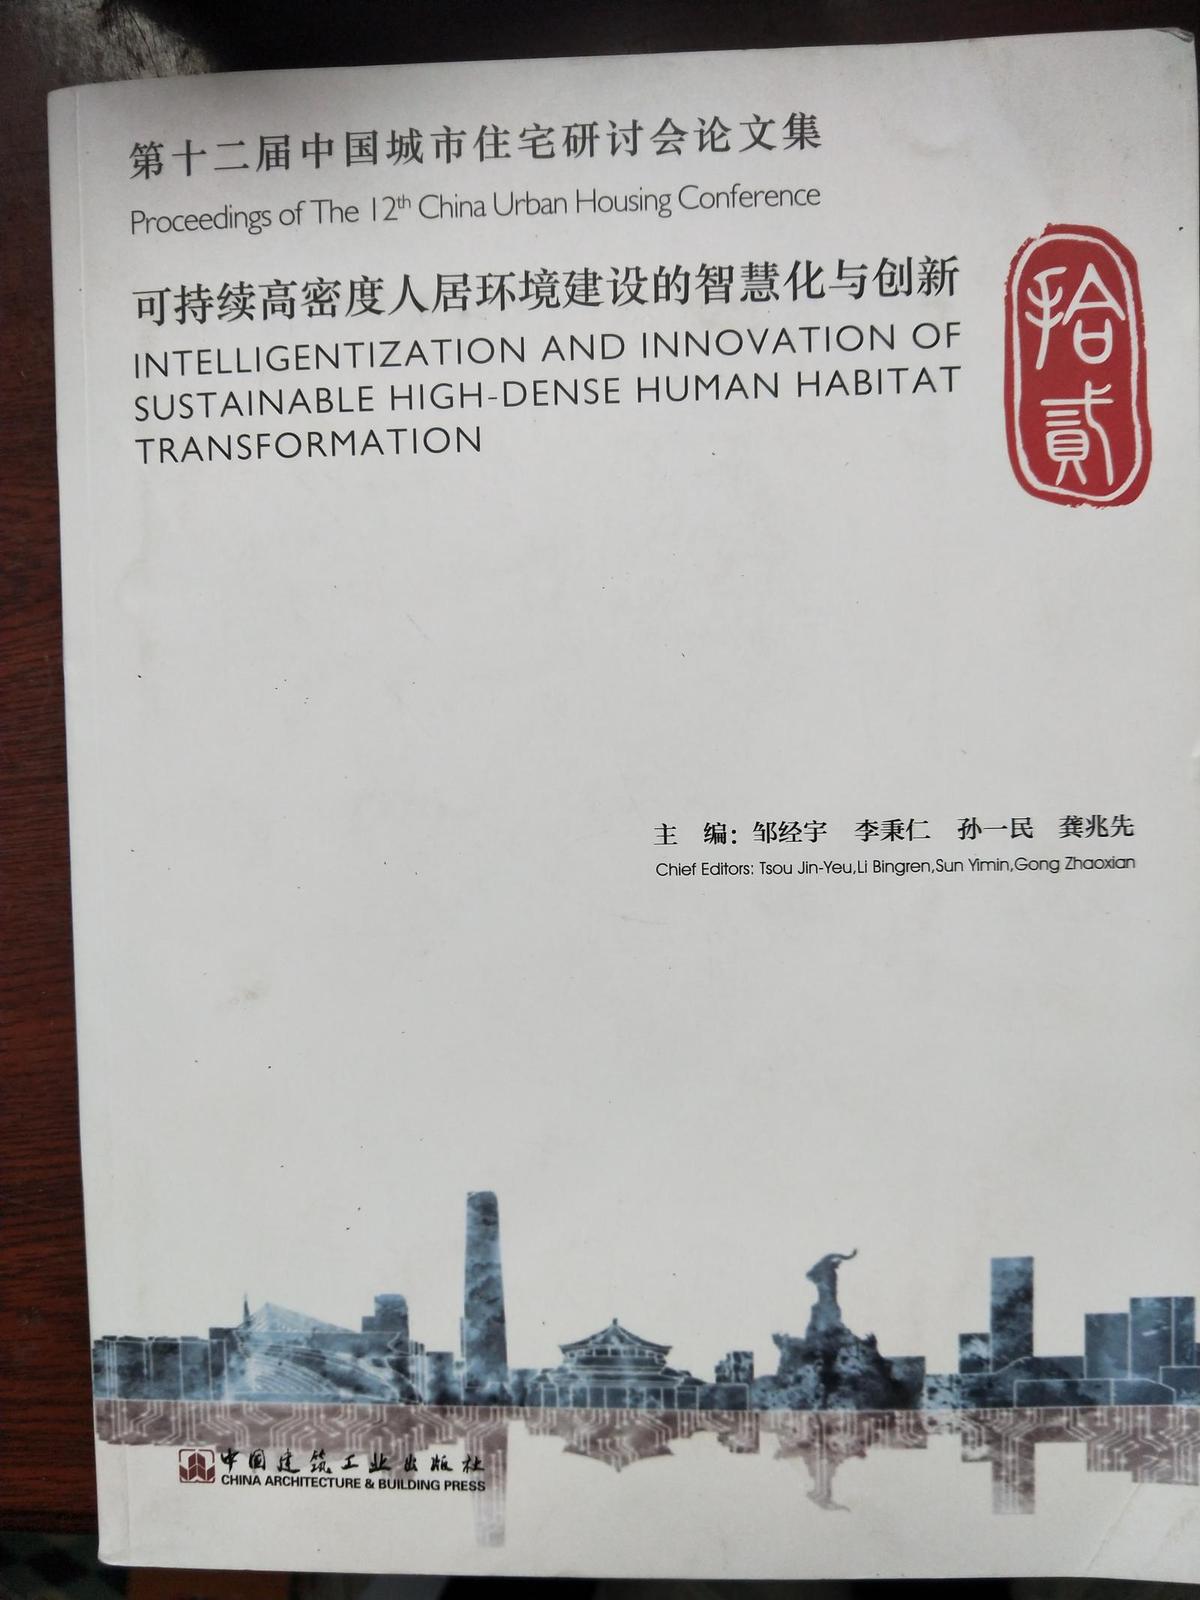 第十二届中国城市住宅研讨会论文集-可持续高密度人居环境建设的智慧化与创新6-1